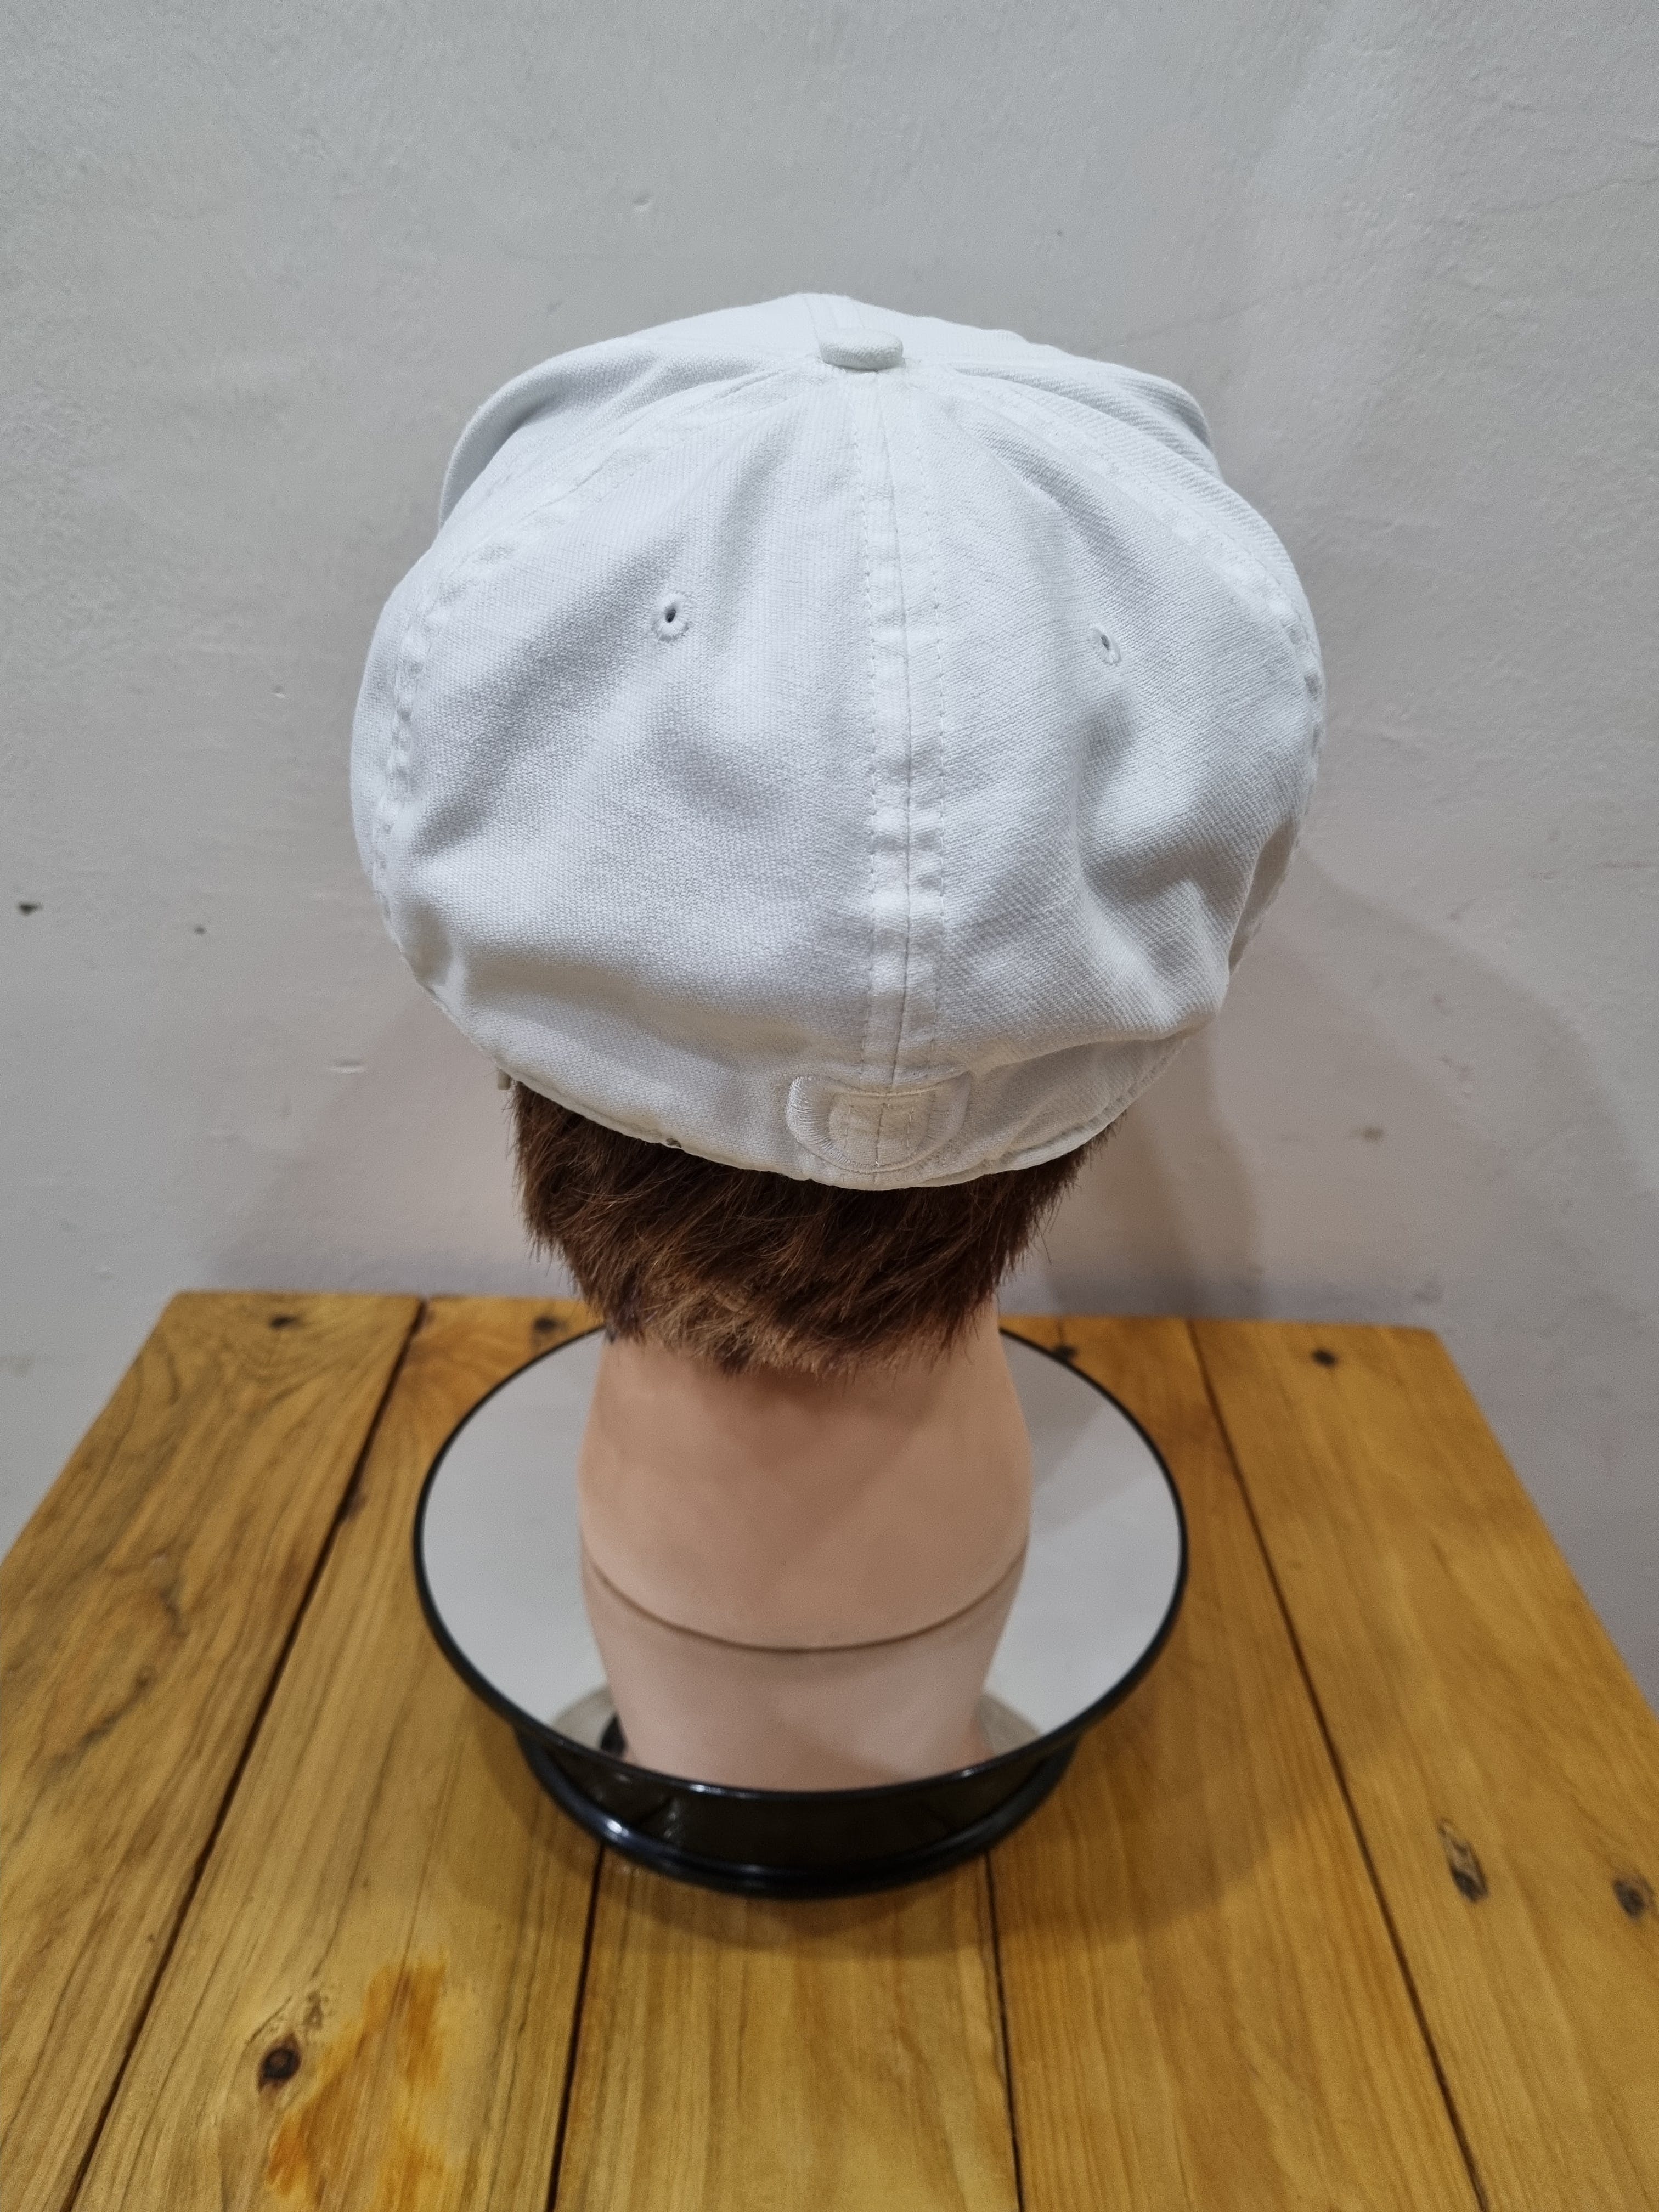 🔥FINAL PRICE DROP🔥Nike Vintage Hat x Street Fashion - 3